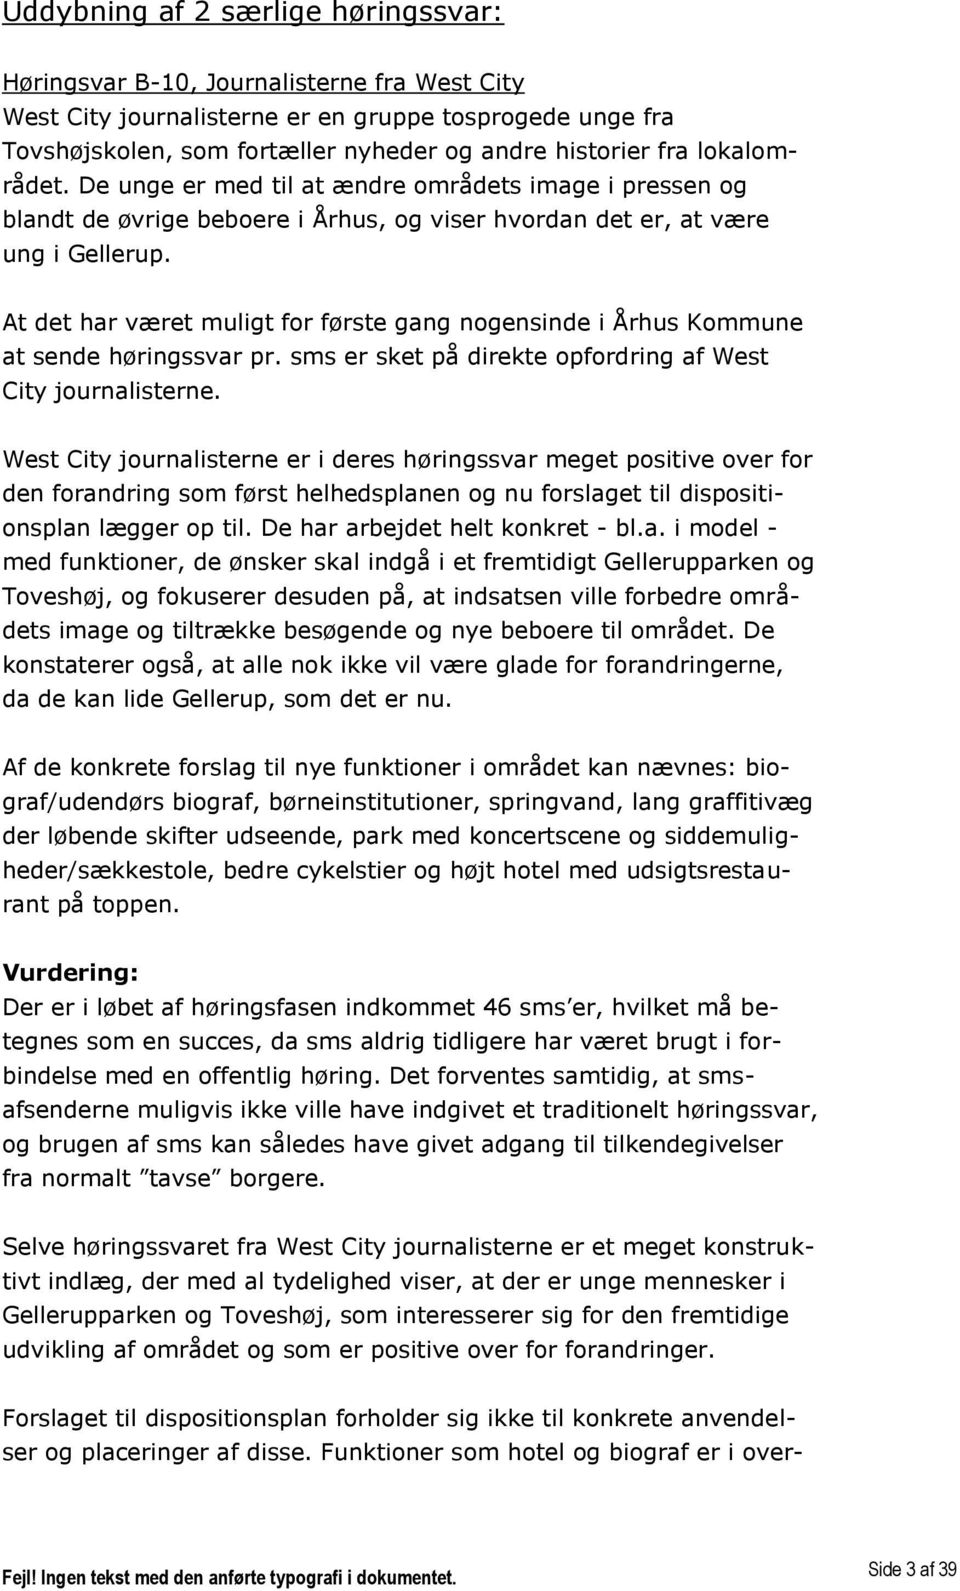 At det har været muligt for første gang nogensinde i Århus Kommune at sende høringssvar pr. sms er sket på direkte opfordring af West City journalisterne.